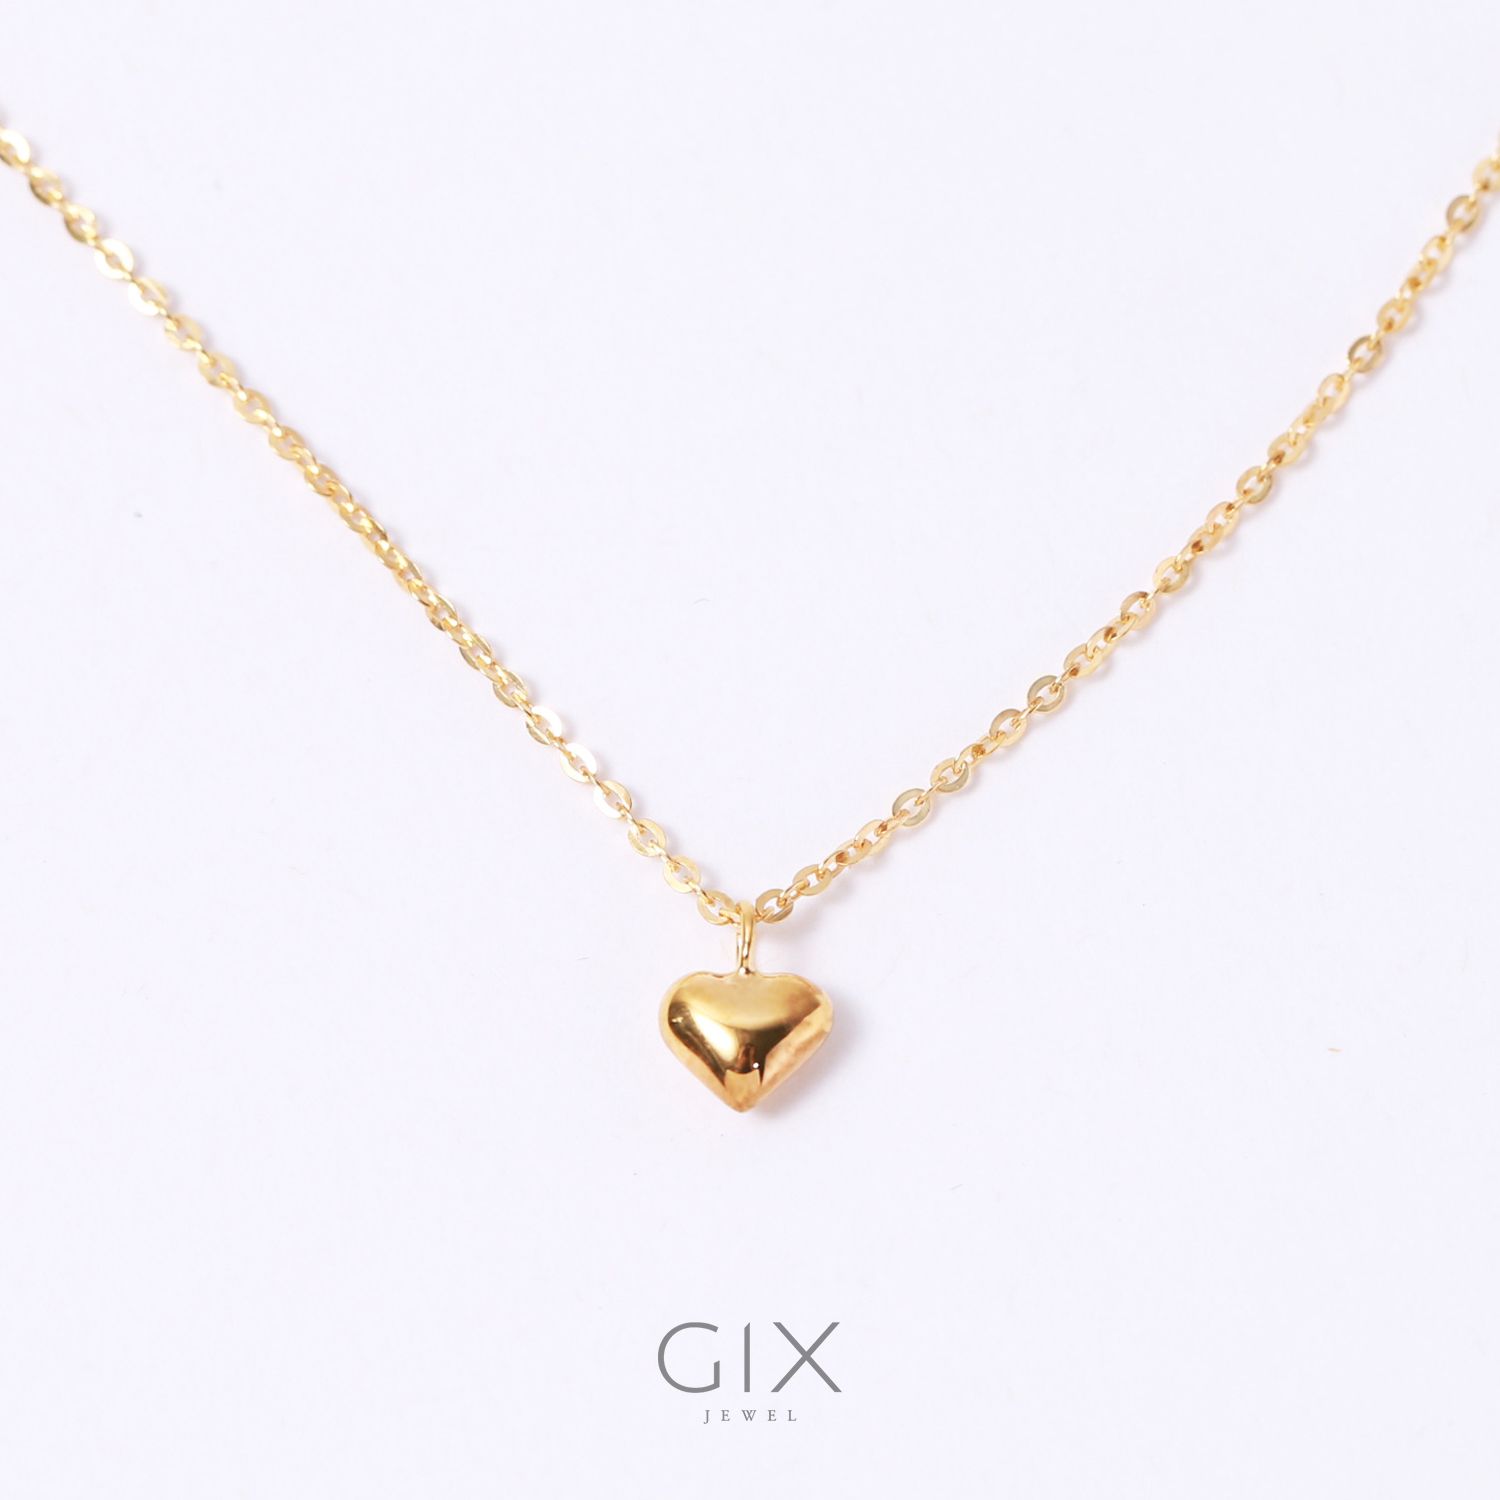  Dây chuyền bạc mạ vàng tim nổi Gix Jewel SPGDC13 